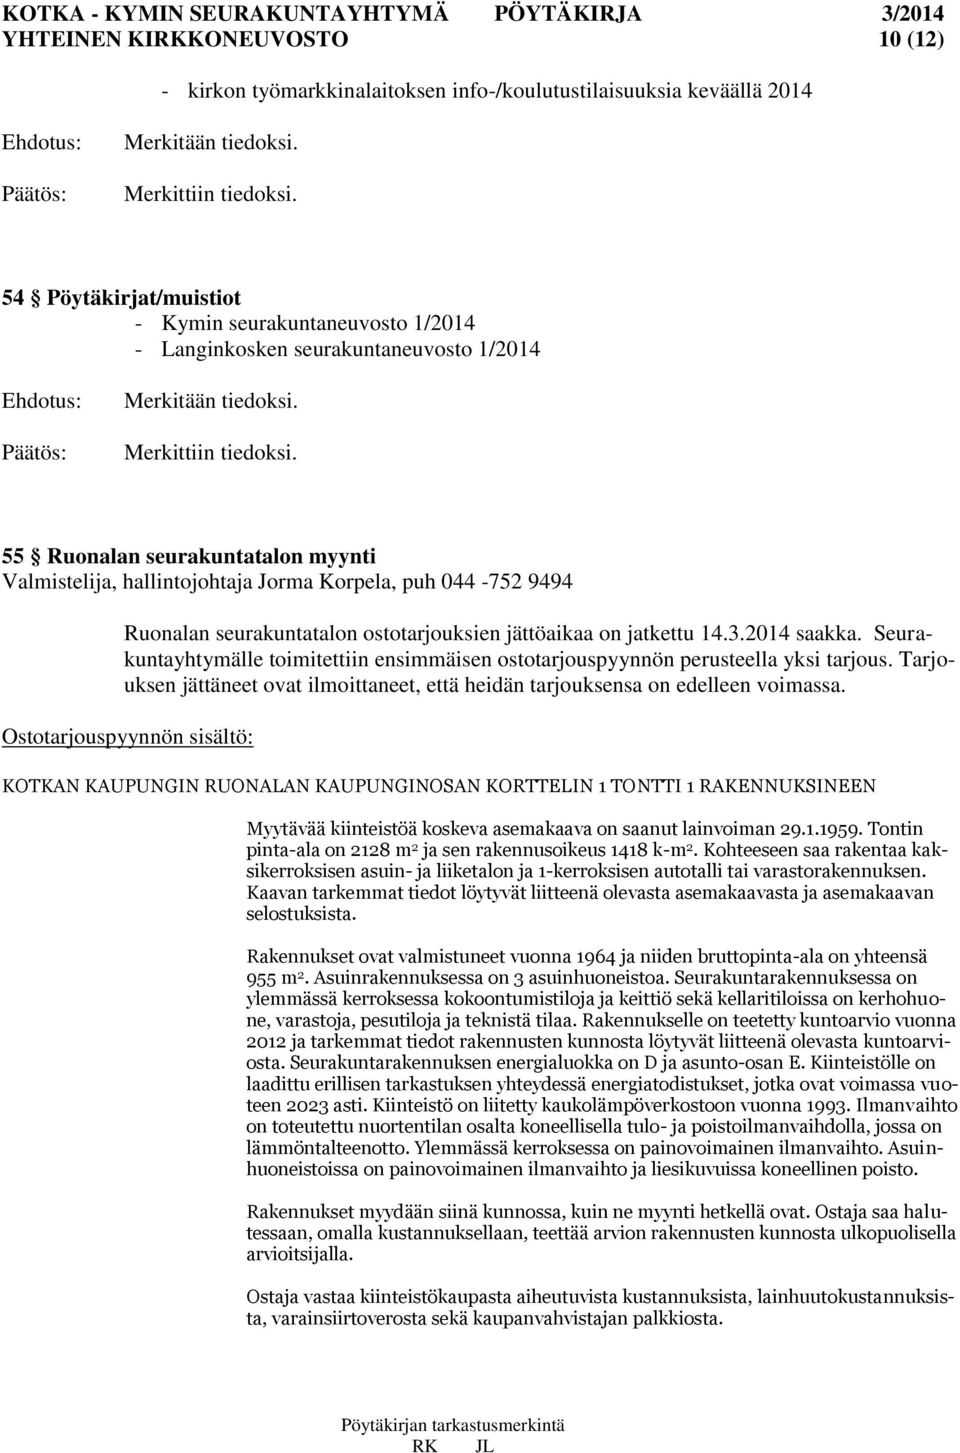 55 Ruonalan seurakuntatalon myynti Valmistelija, hallintojohtaja Jorma Korpela, puh 044-752 9494 Ruonalan seurakuntatalon ostotarjouksien jättöaikaa on jatkettu 14.3.2014 saakka.